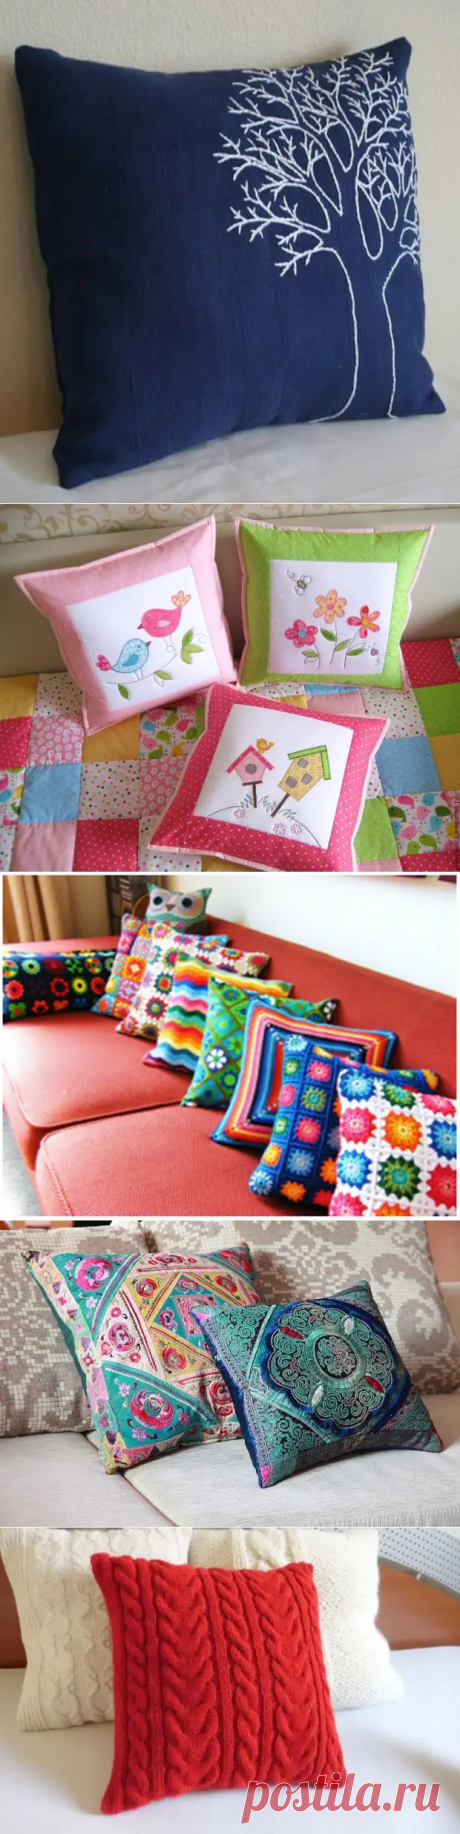 Какие декоративные подушки смотрятся в интерьере наиболее эффектно? (79 фото) - cozyblog - медиаплатформа МирТесен